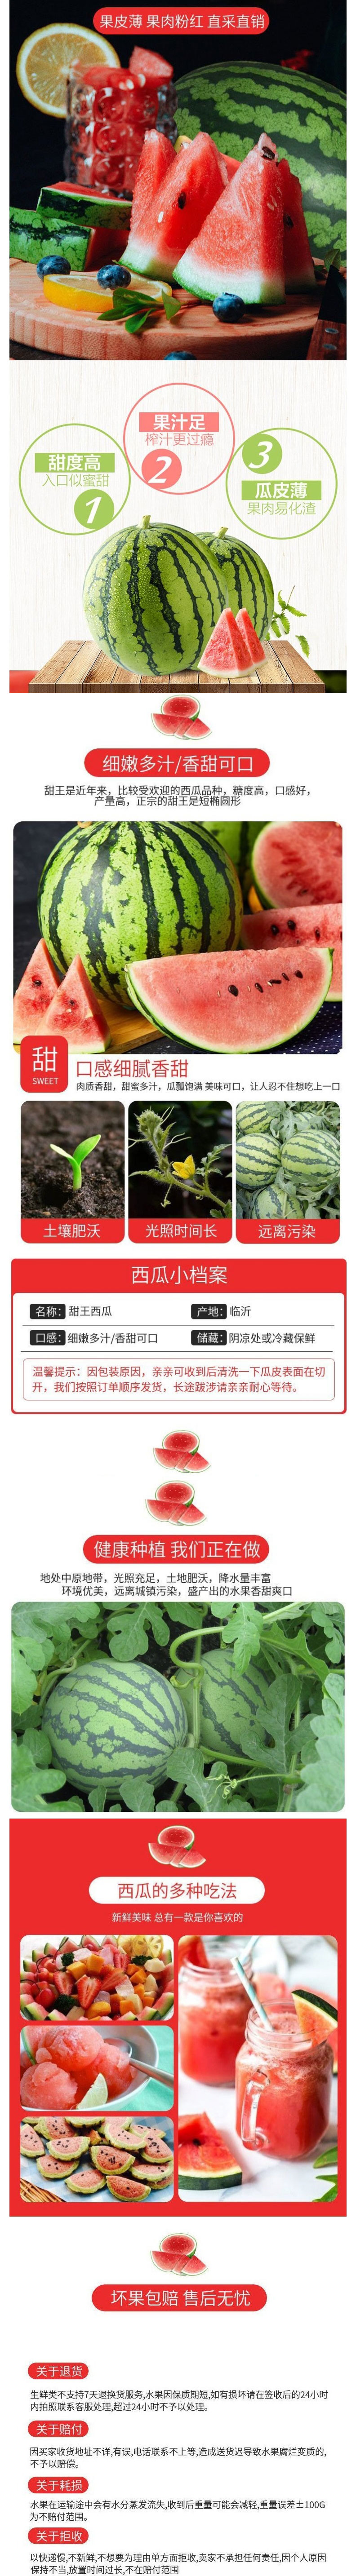 甜王西瓜新品上市-薄皮沙瓤双星品种多-明欣果蔬.jpg